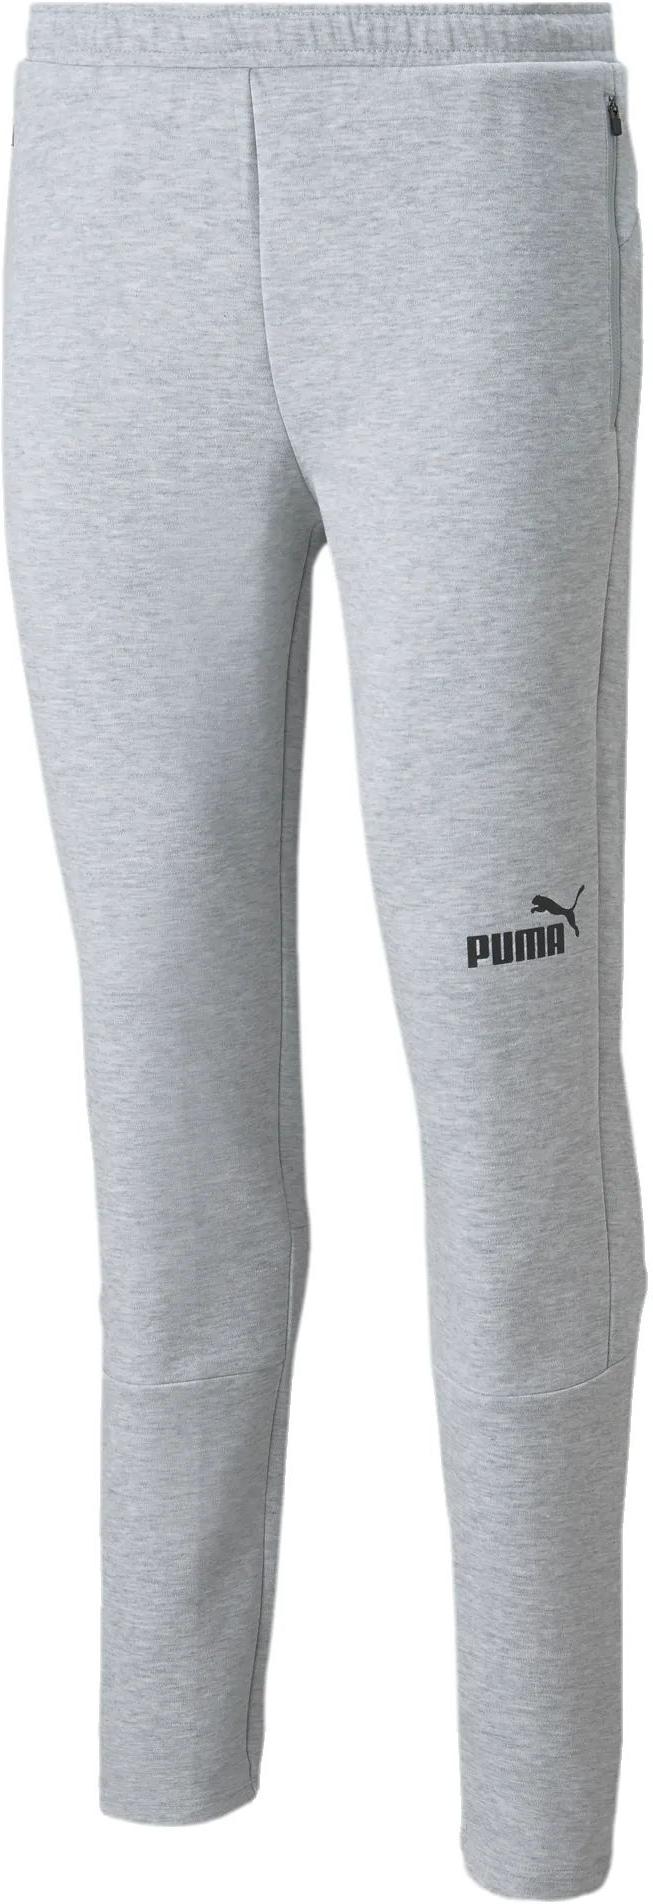 Calças Puma teamFINAL Casuals Pants